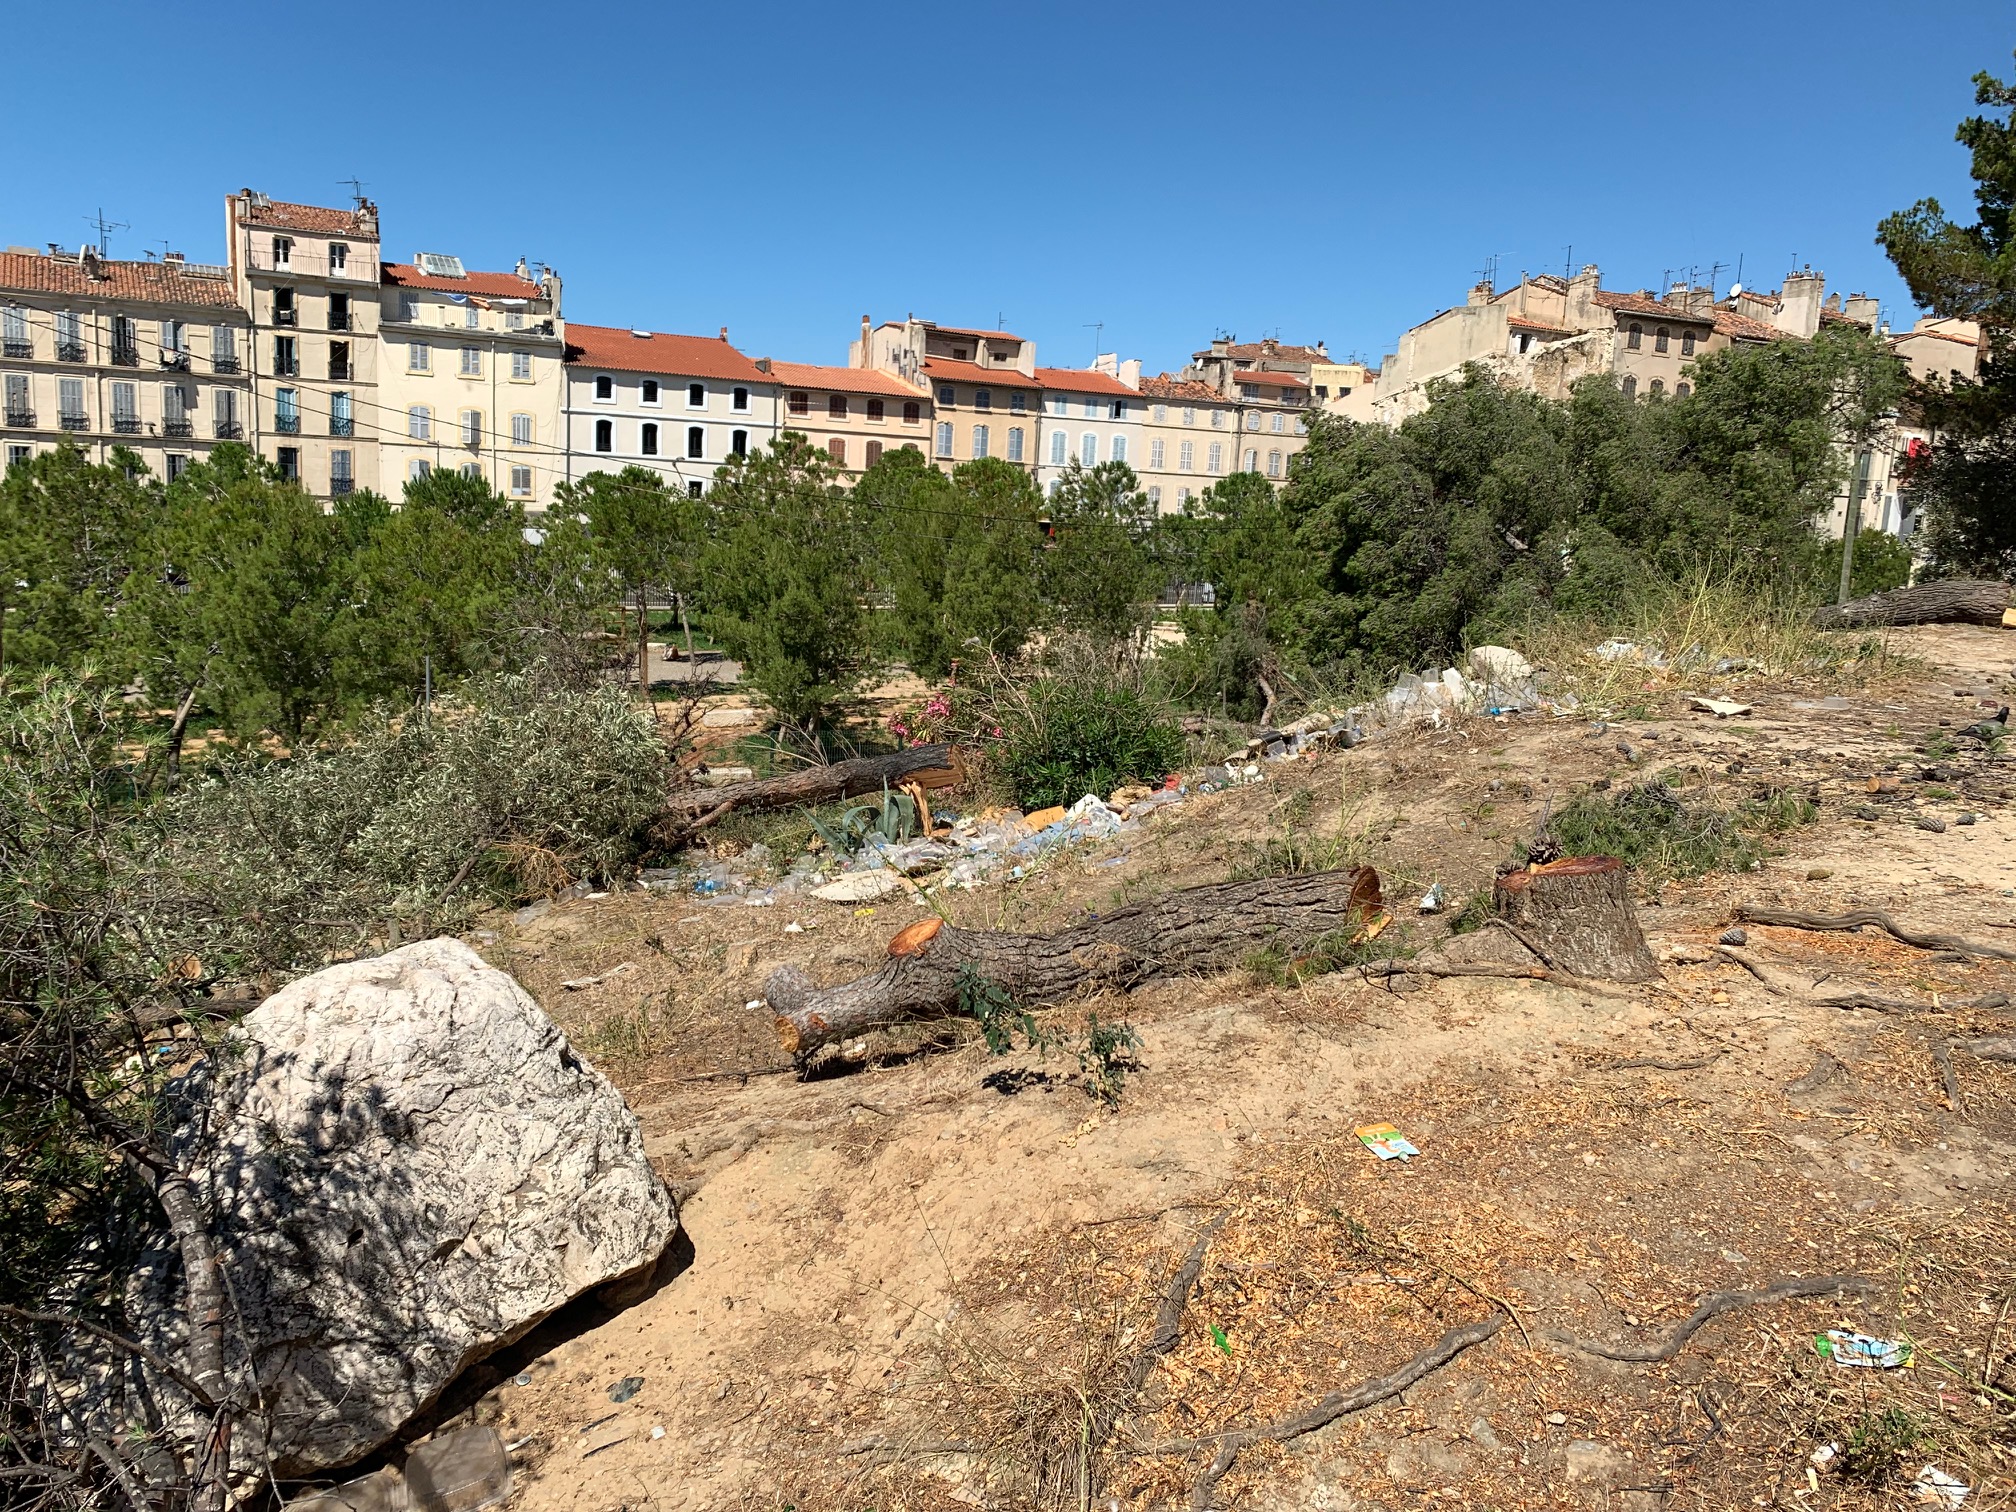 (2) Massacre à la tronçonneuse Porte d’Aix à Marseille : Les restes de la pinède de pins  – des pignes – On va rouvrir le dossier !